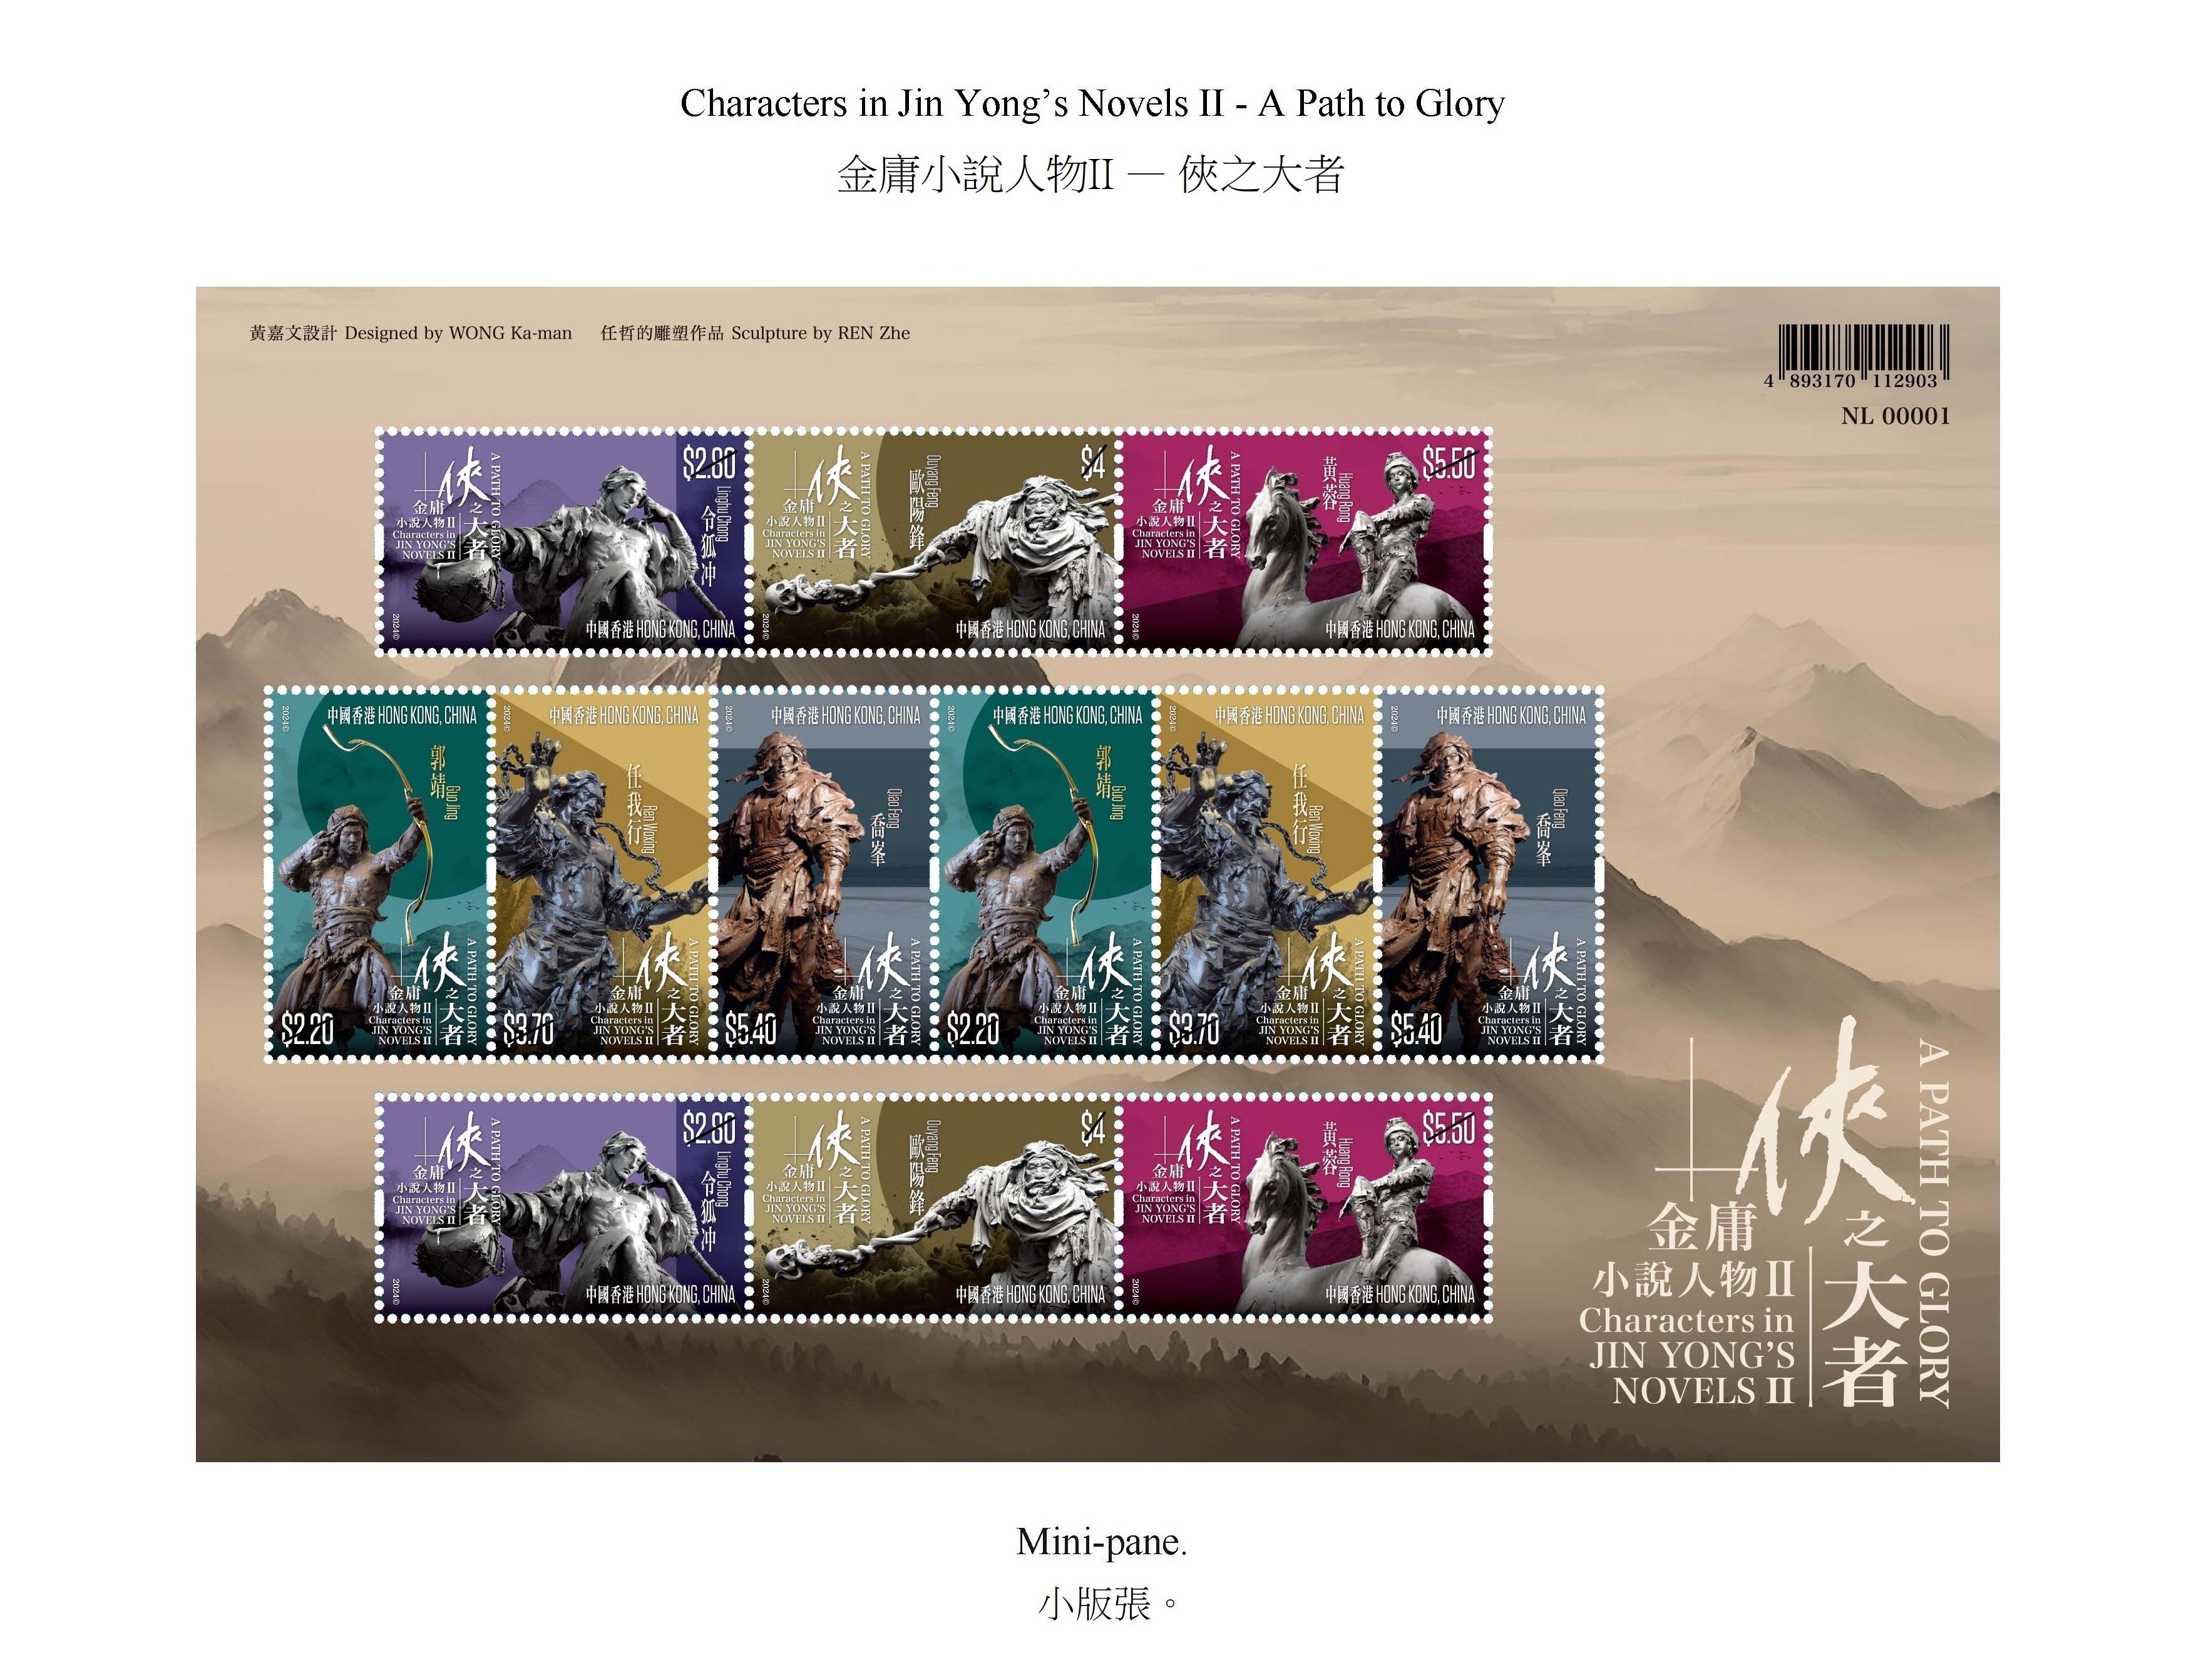 香港邮政三月十四日（星期四）发行以「金庸小说人物II──侠之大者」为题的特别邮票及相关集邮品。图示小版张。